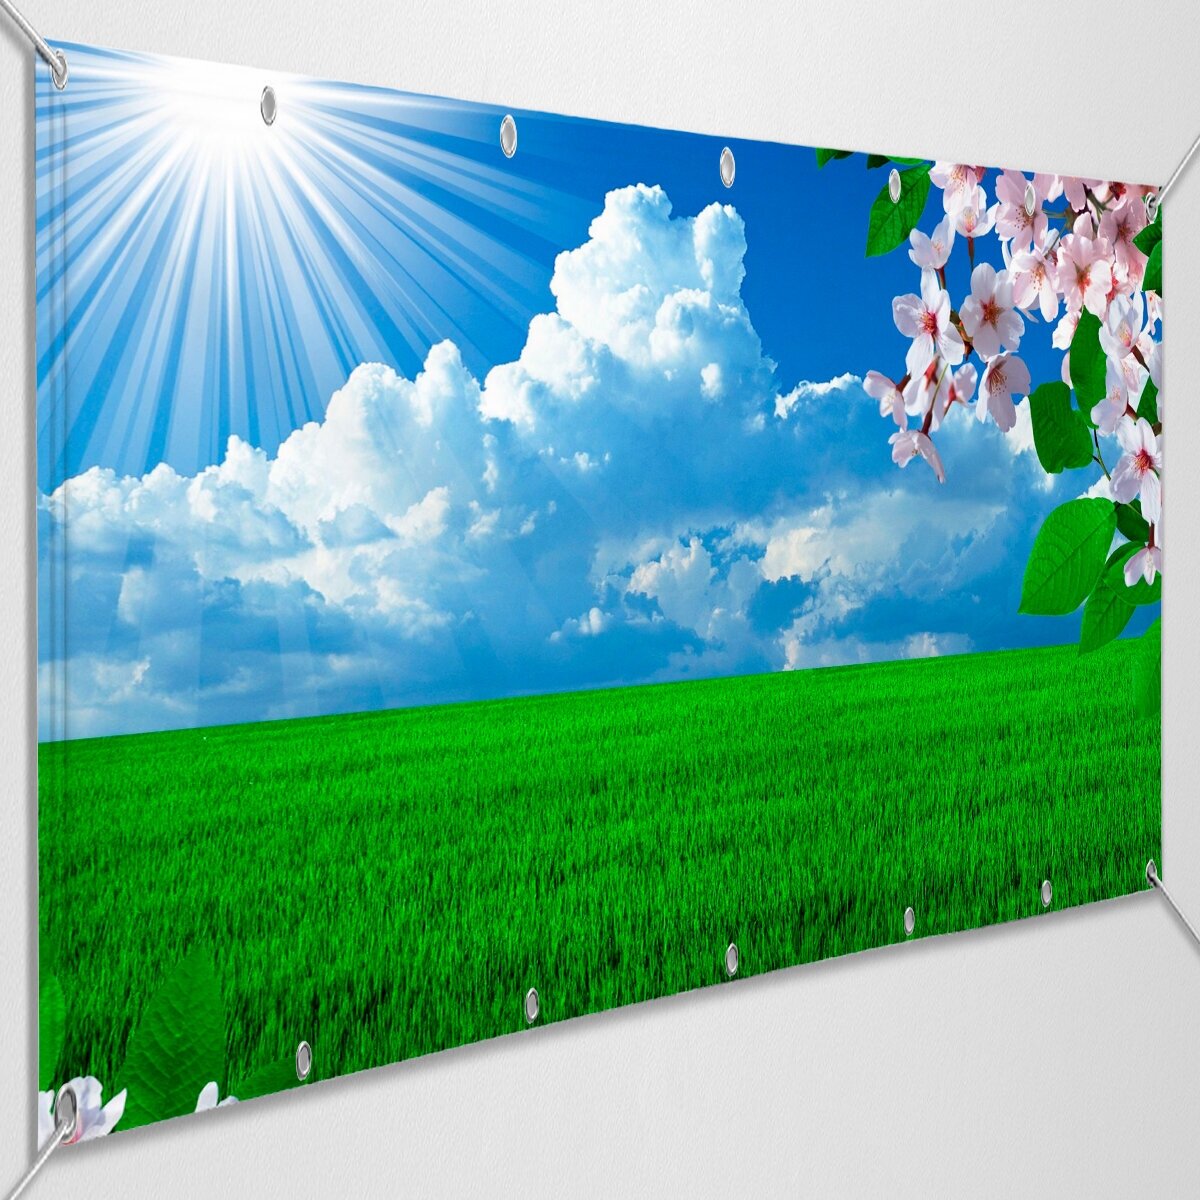 Баннер "Весенний фон" / Растяжка для оформления помещения, сцены с весенним фоном / 5x1 м.